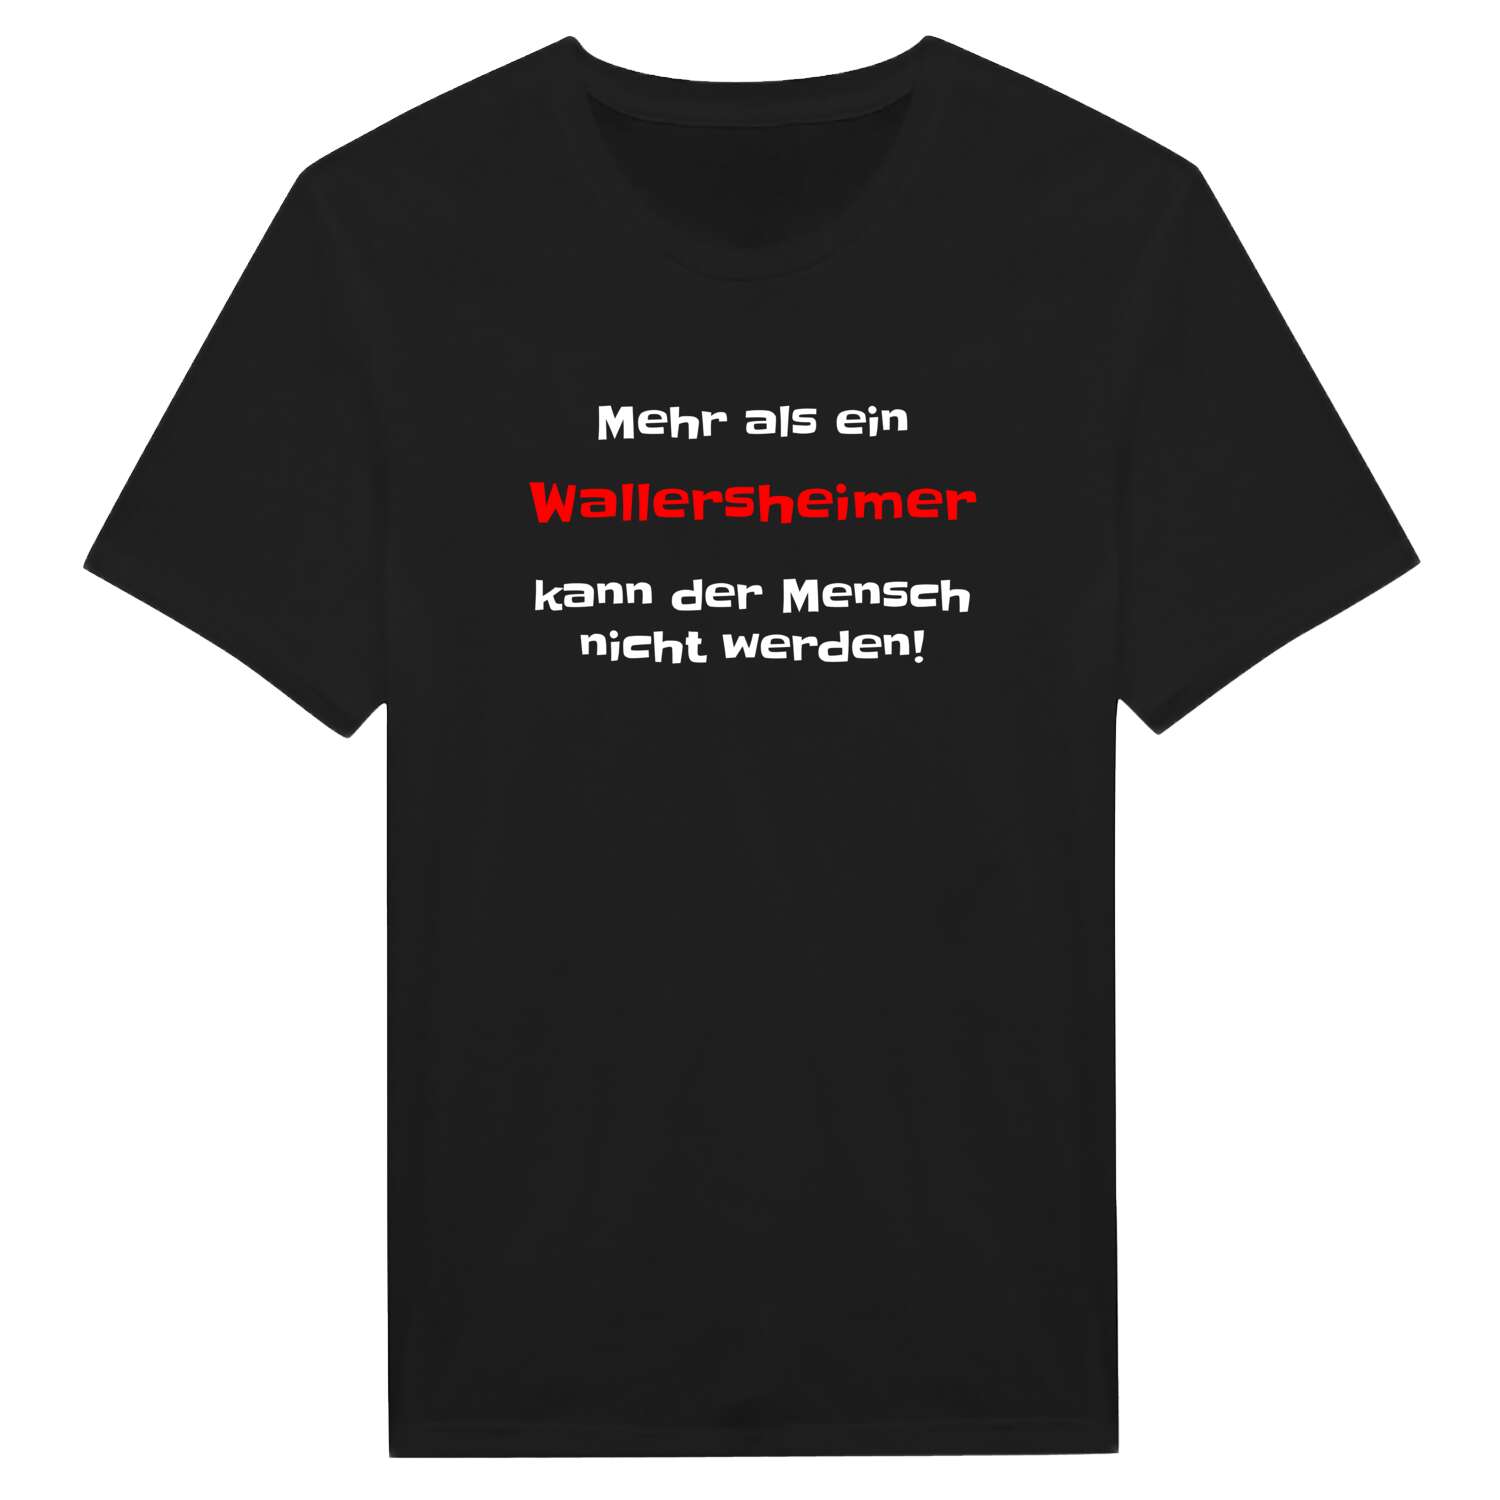 Wallersheim T-Shirt »Mehr als ein«